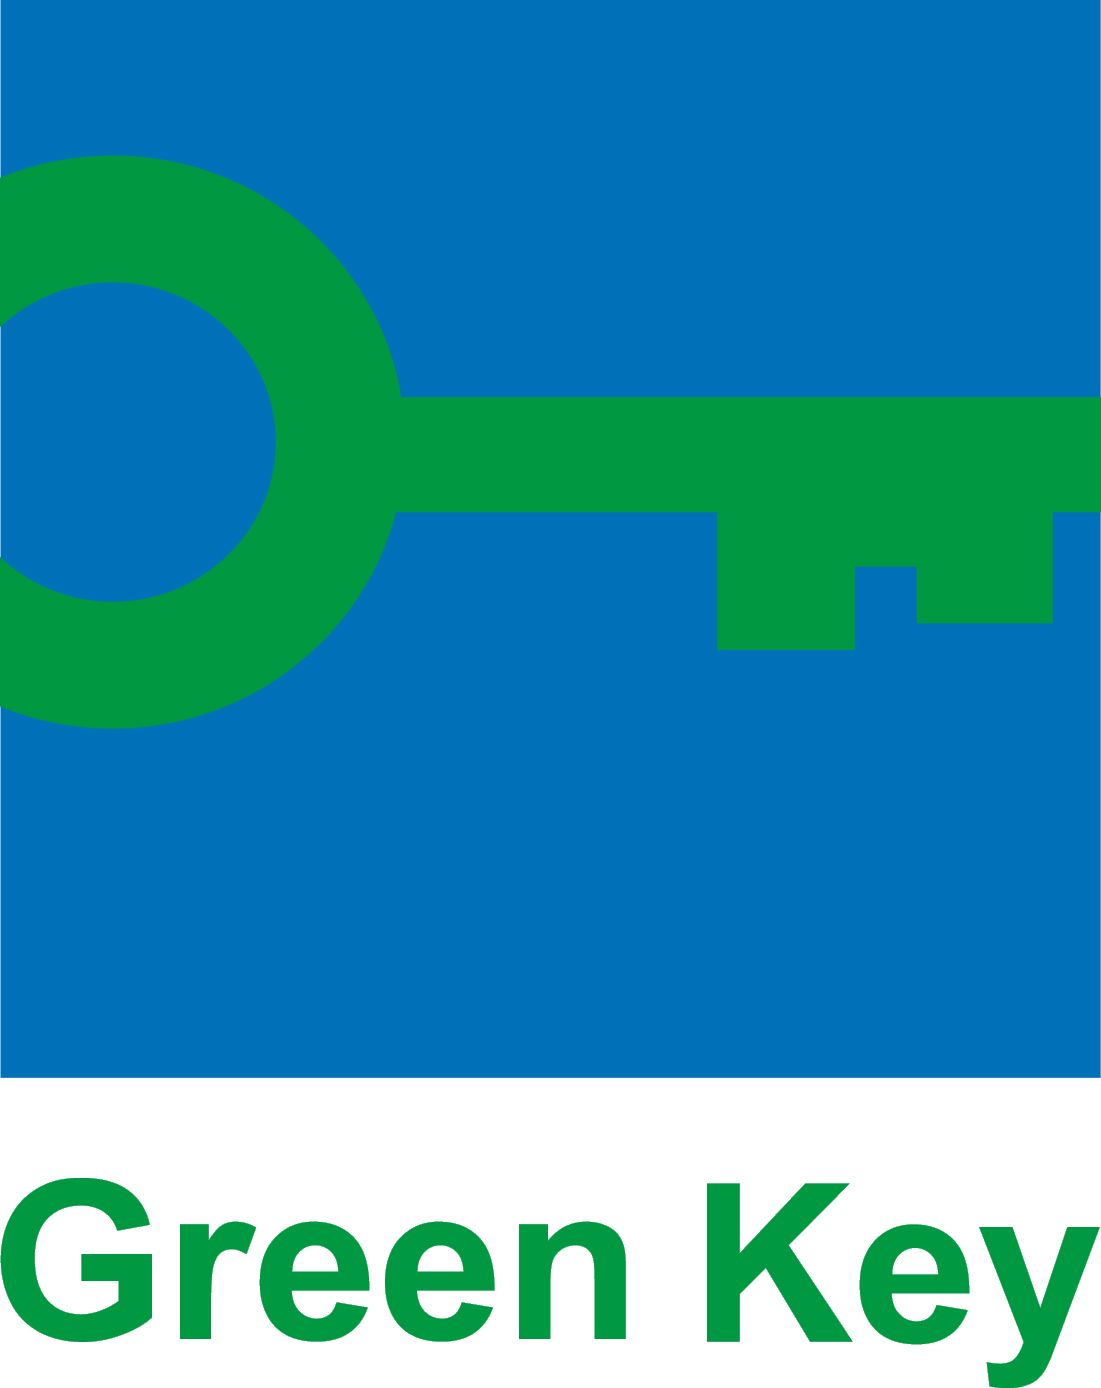 Nuorisokeskus Metsäkartano Green Key